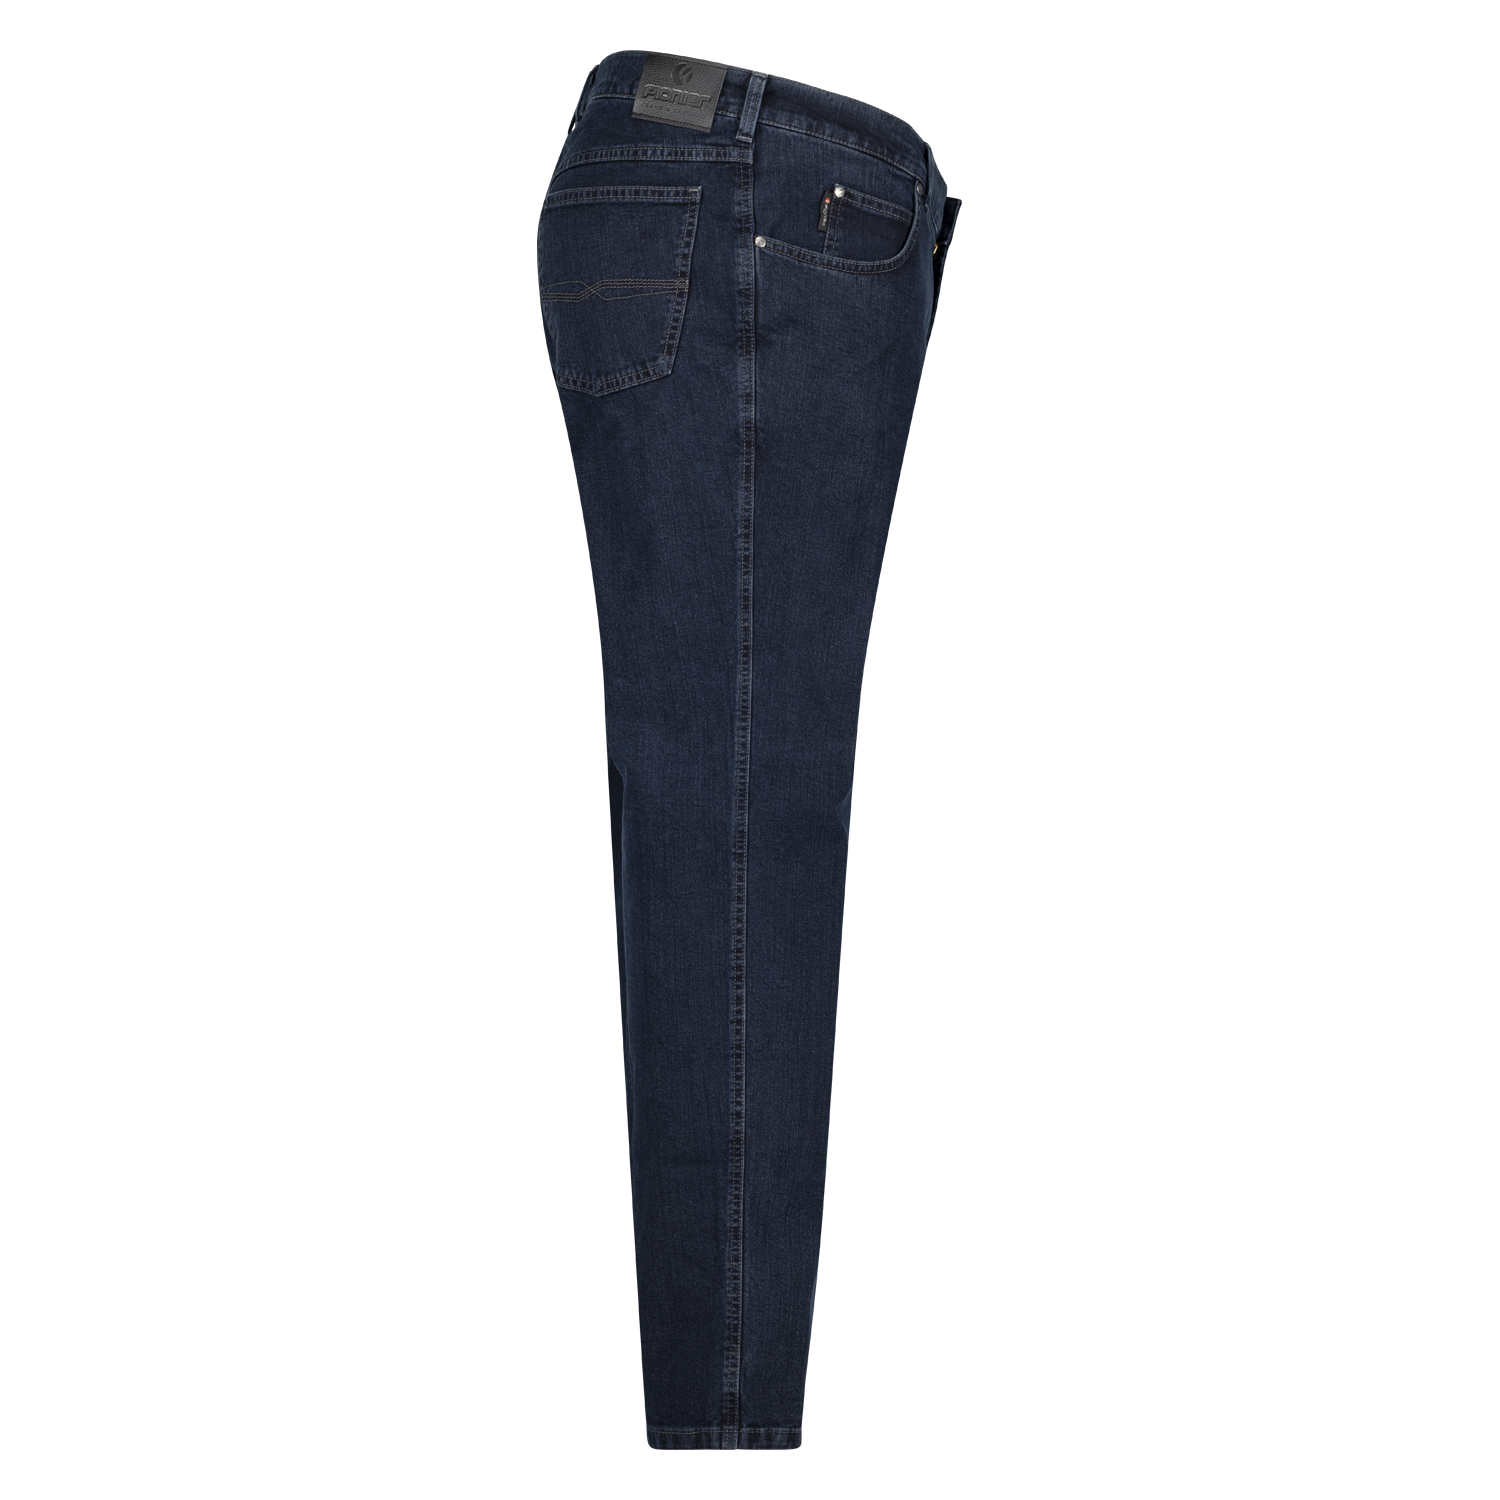 Pioneer Five Pocket Jeans Modell "Peter" in Bauchgrößen 59 - 85 dark blue stonewash